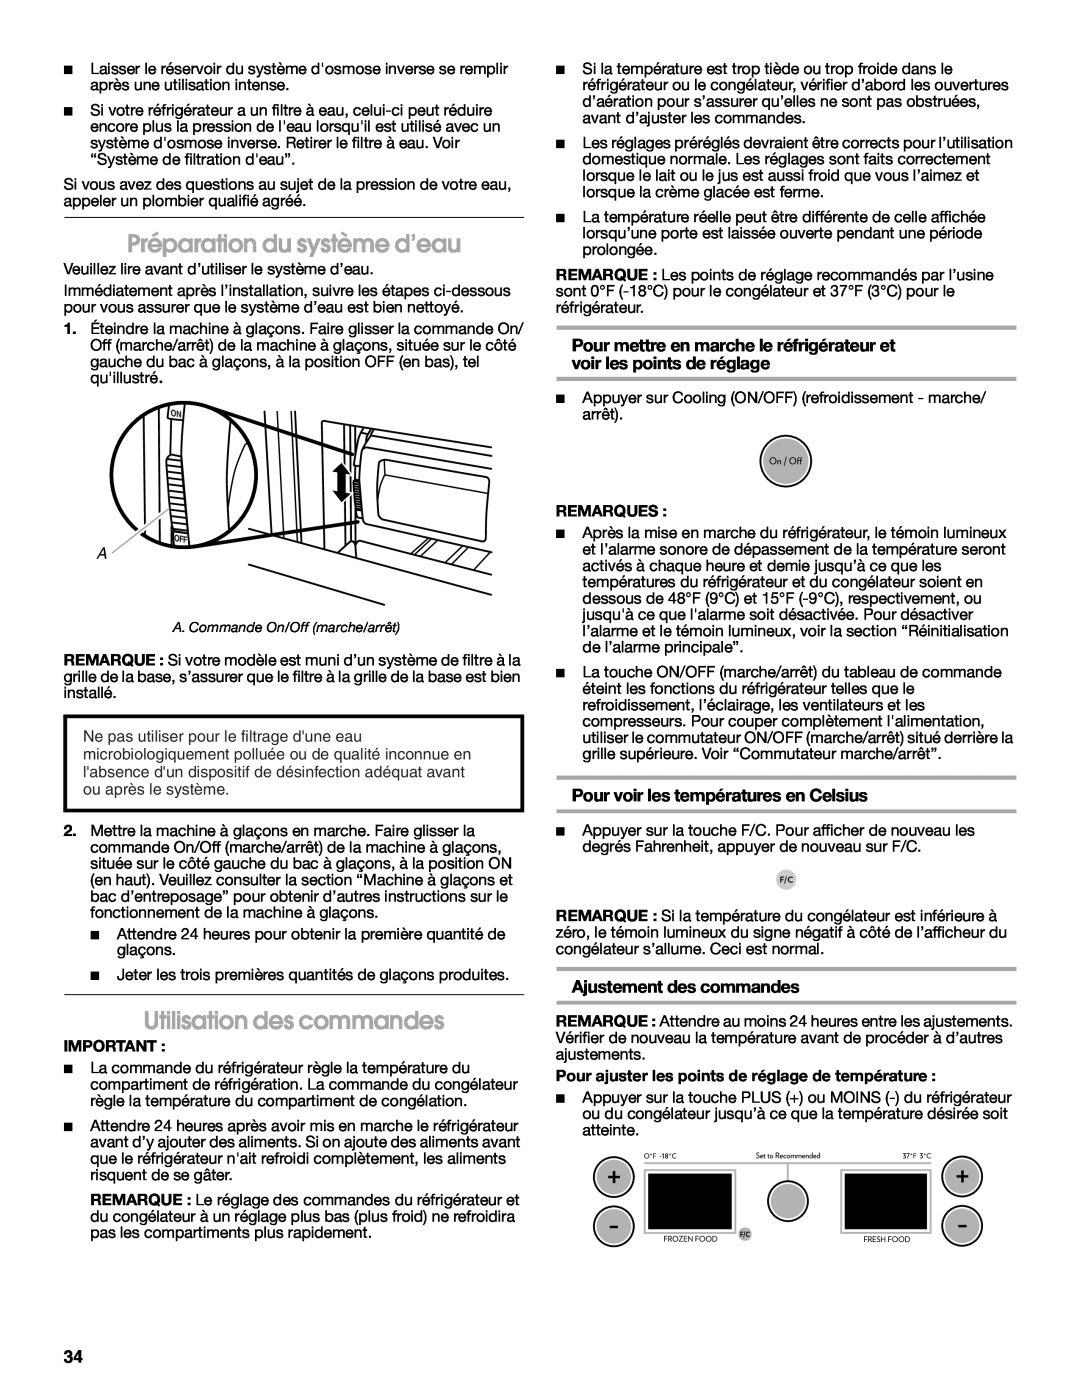 Jenn-Air W10183787A manual Préparation du système d’eau, Utilisation des commandes, Pour voir les températures en Celsius 